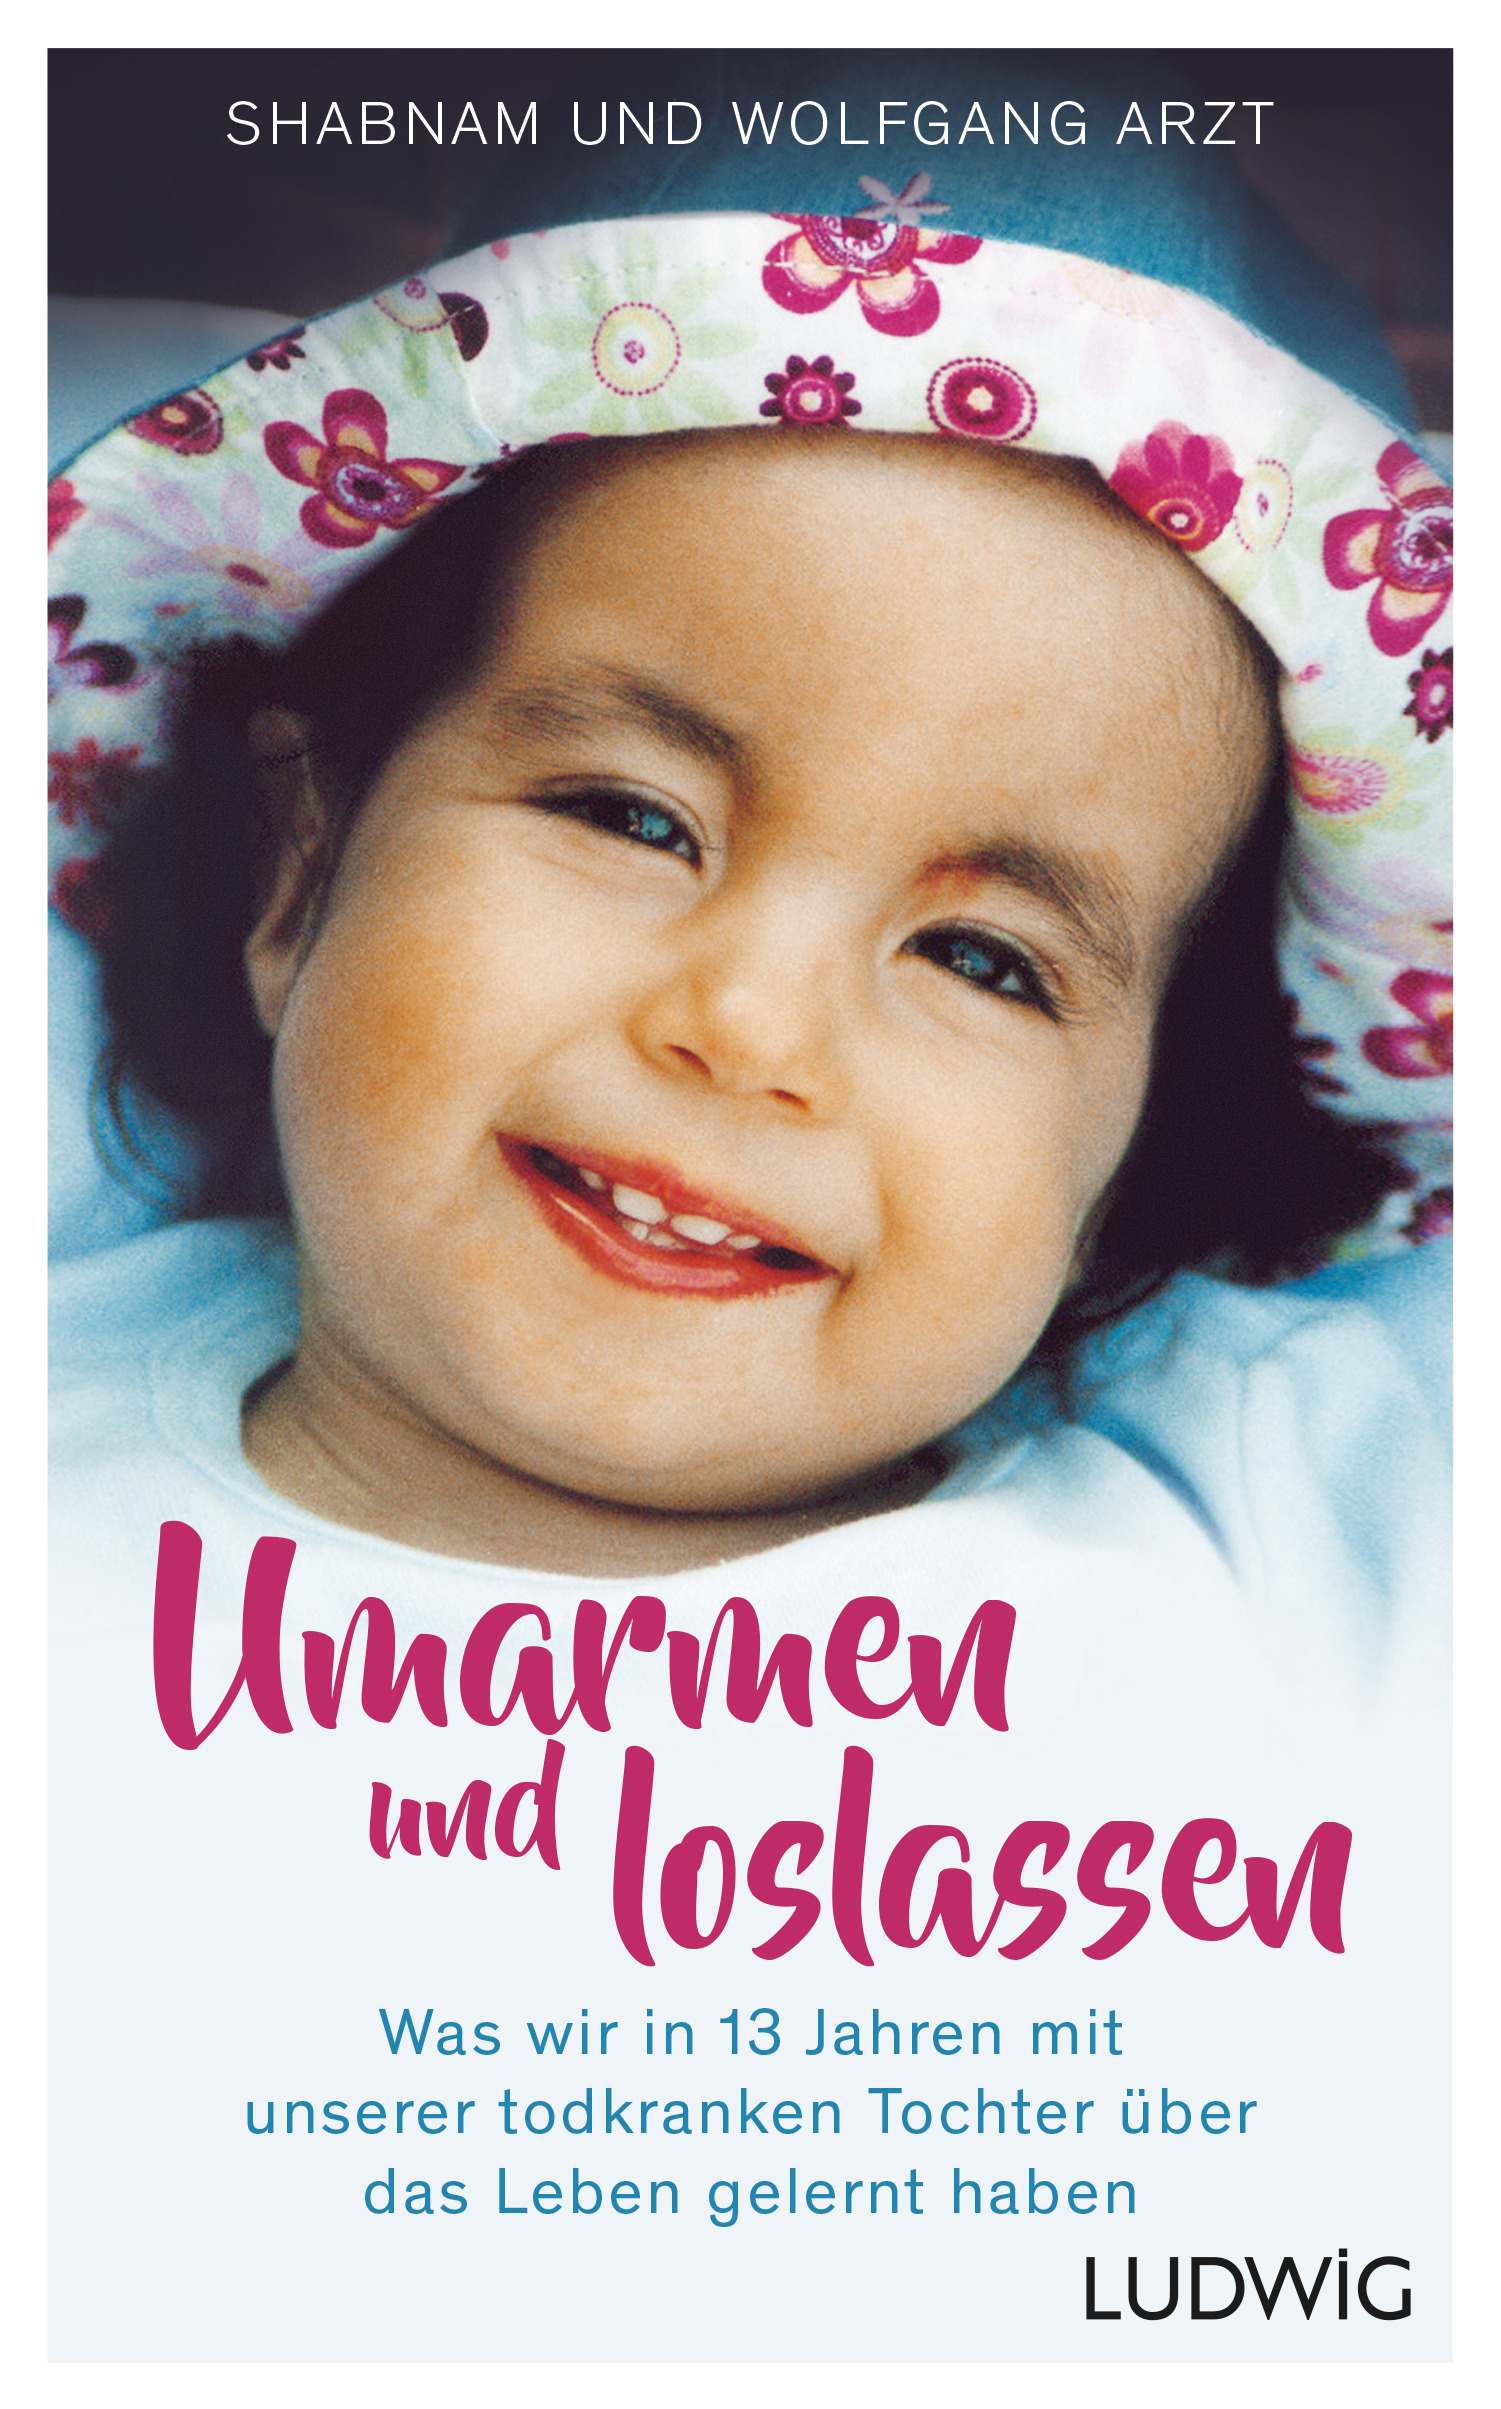 Buchcover Umarmen und loslassen mit Jaëls Lächeln im Alter von zwei Jahren mit Trisomie 18